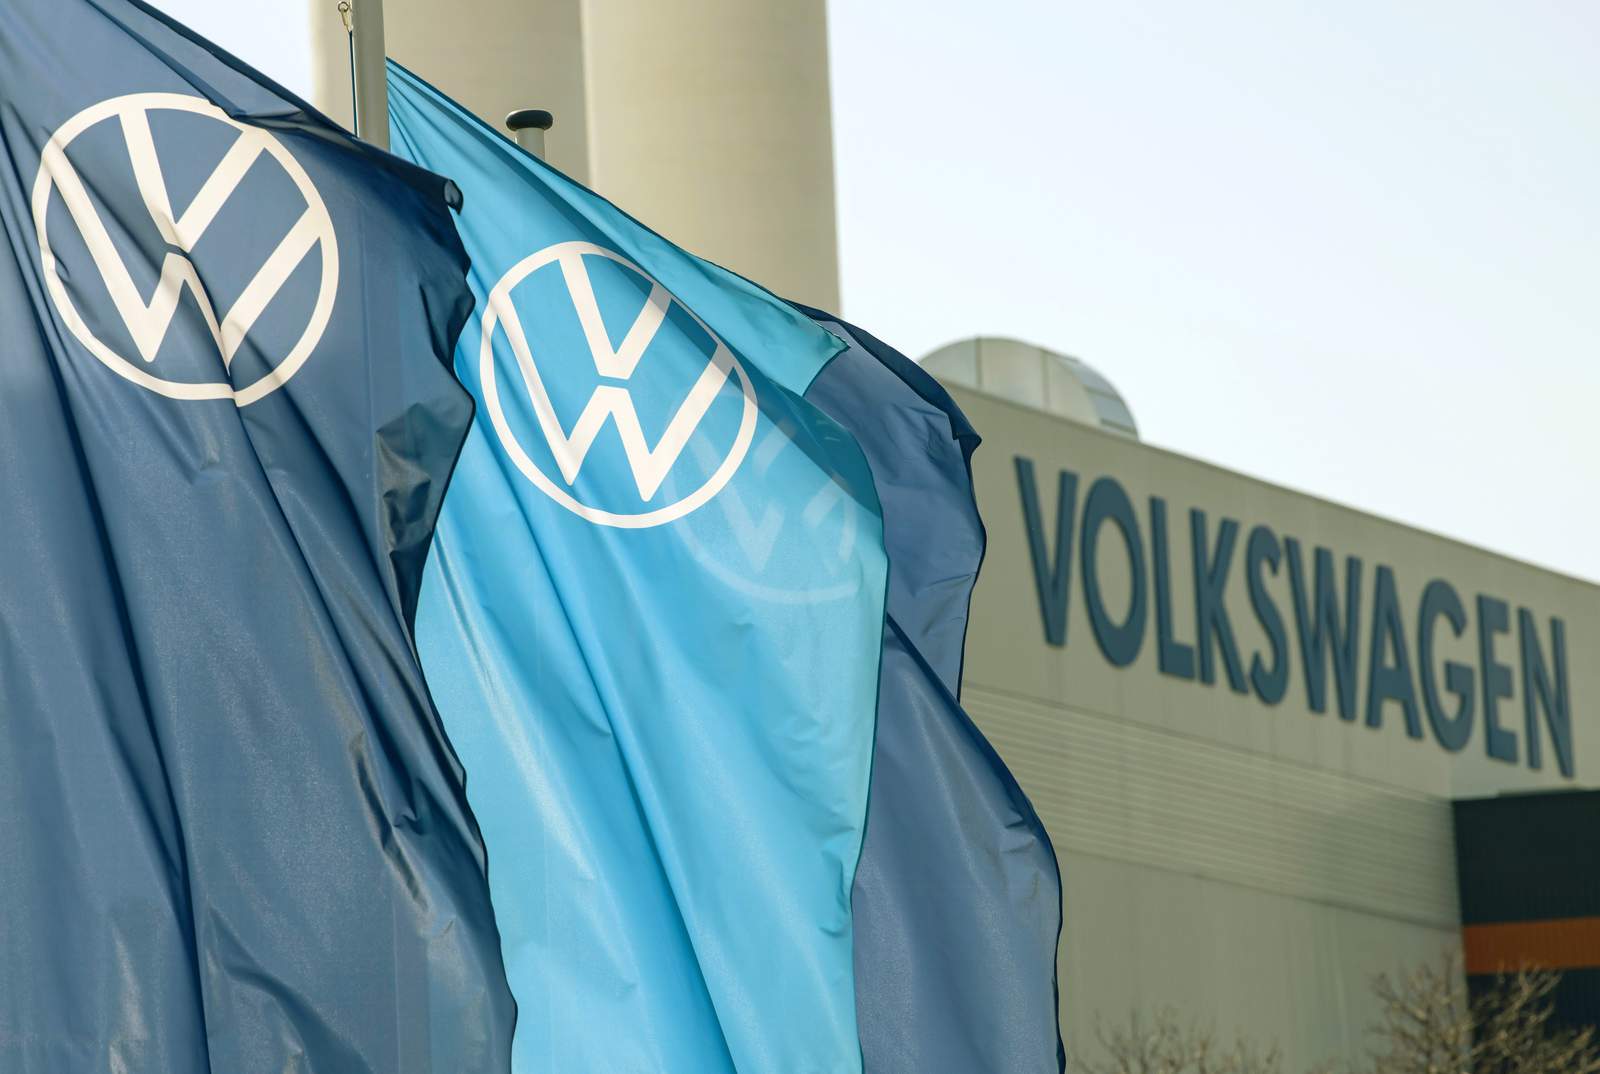 VW recalls Beetles to replace Takata air bag inflators